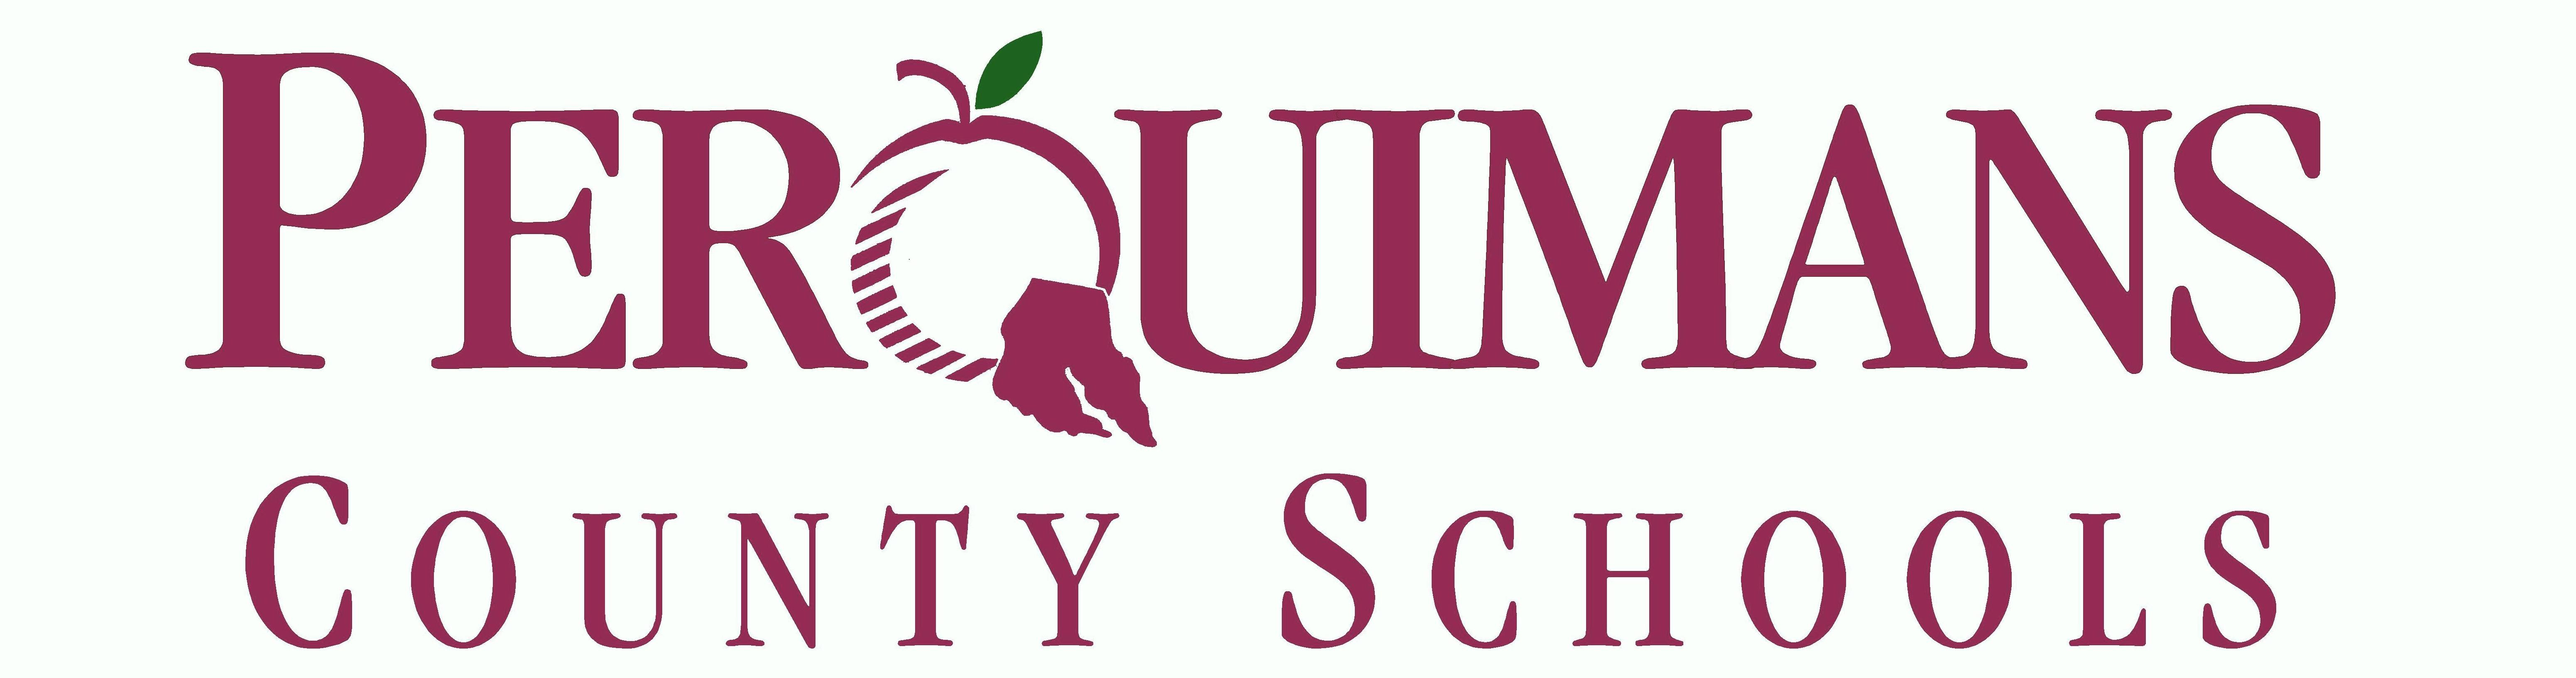 Perquimans County Schools Pierce Group Benefits